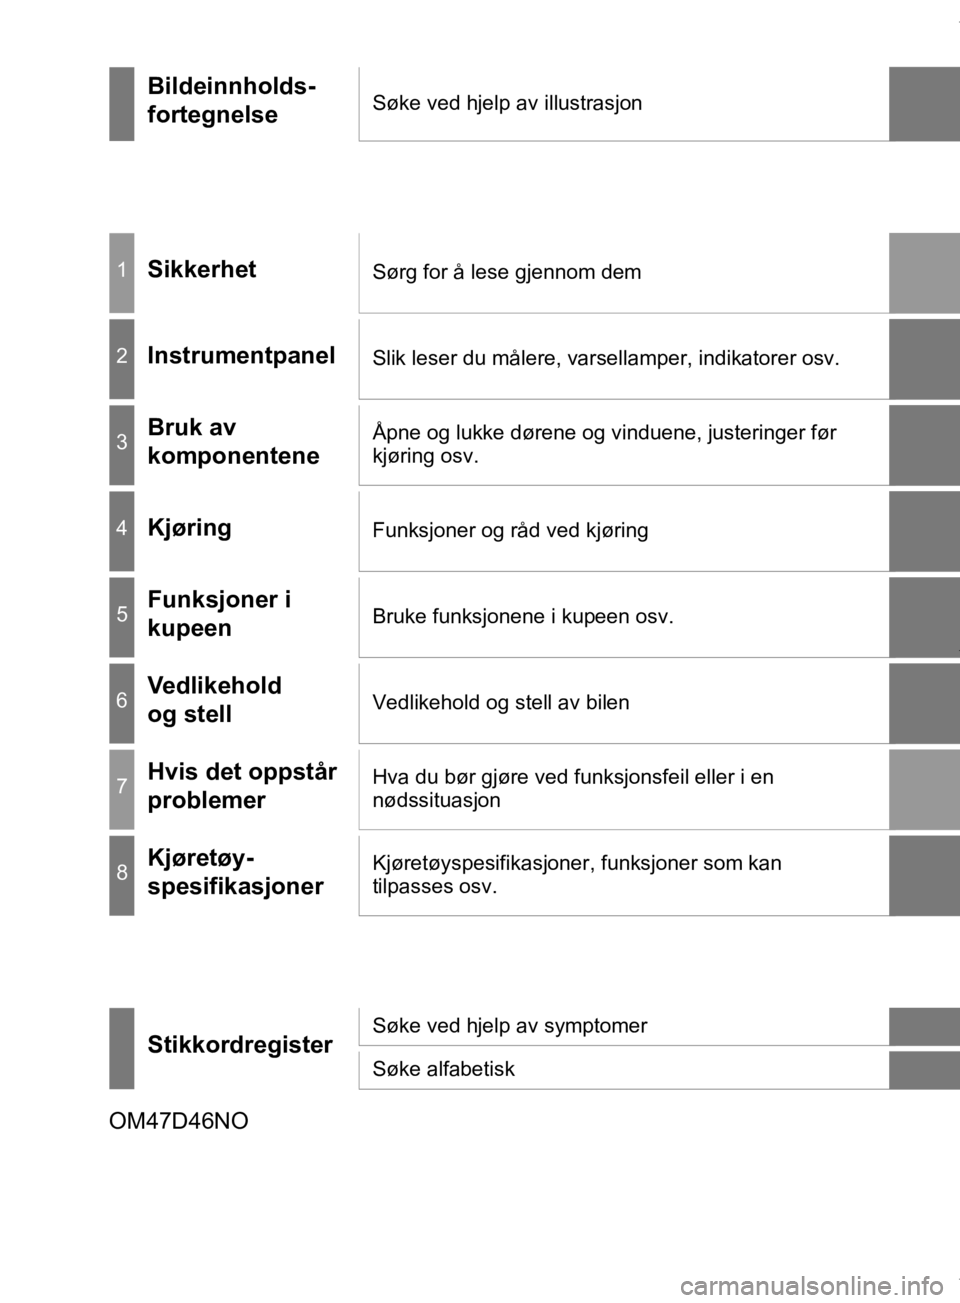 TOYOTA PRIUS 2019  Instruksjoner for bruk (in Norwegian) OM47D46NO
Bildeinnholds-
fortegnelseSøke ved hjelp av illustrasjon
1SikkerhetSørg for å lese gjennom dem
2InstrumentpanelSlik leser du målere, varsellamper, indikatorer osv.
3Bruk av 
komponentene